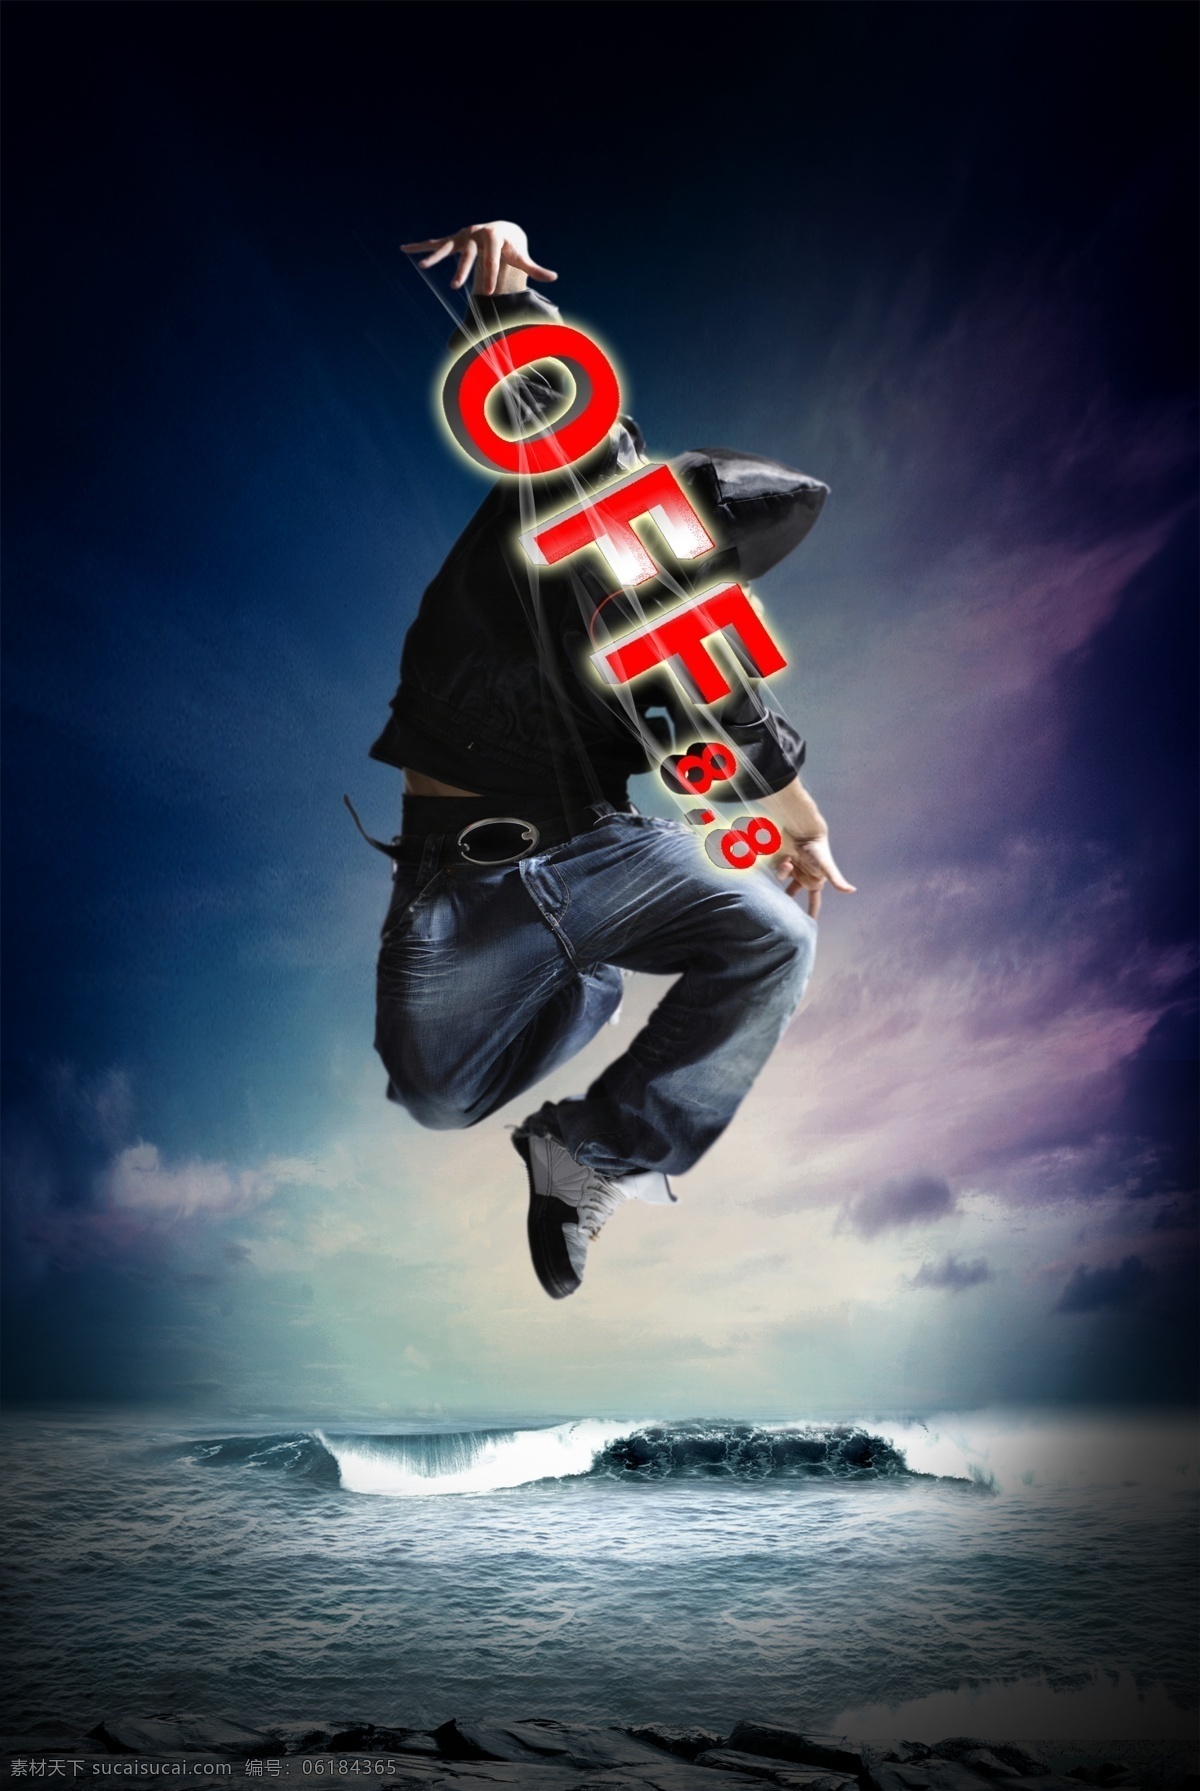 促销 海报 分层 促销海报 天空 舞者 off8 海 礁石 促销海报背景 源文件 psd素材 广告设计模板 黑色